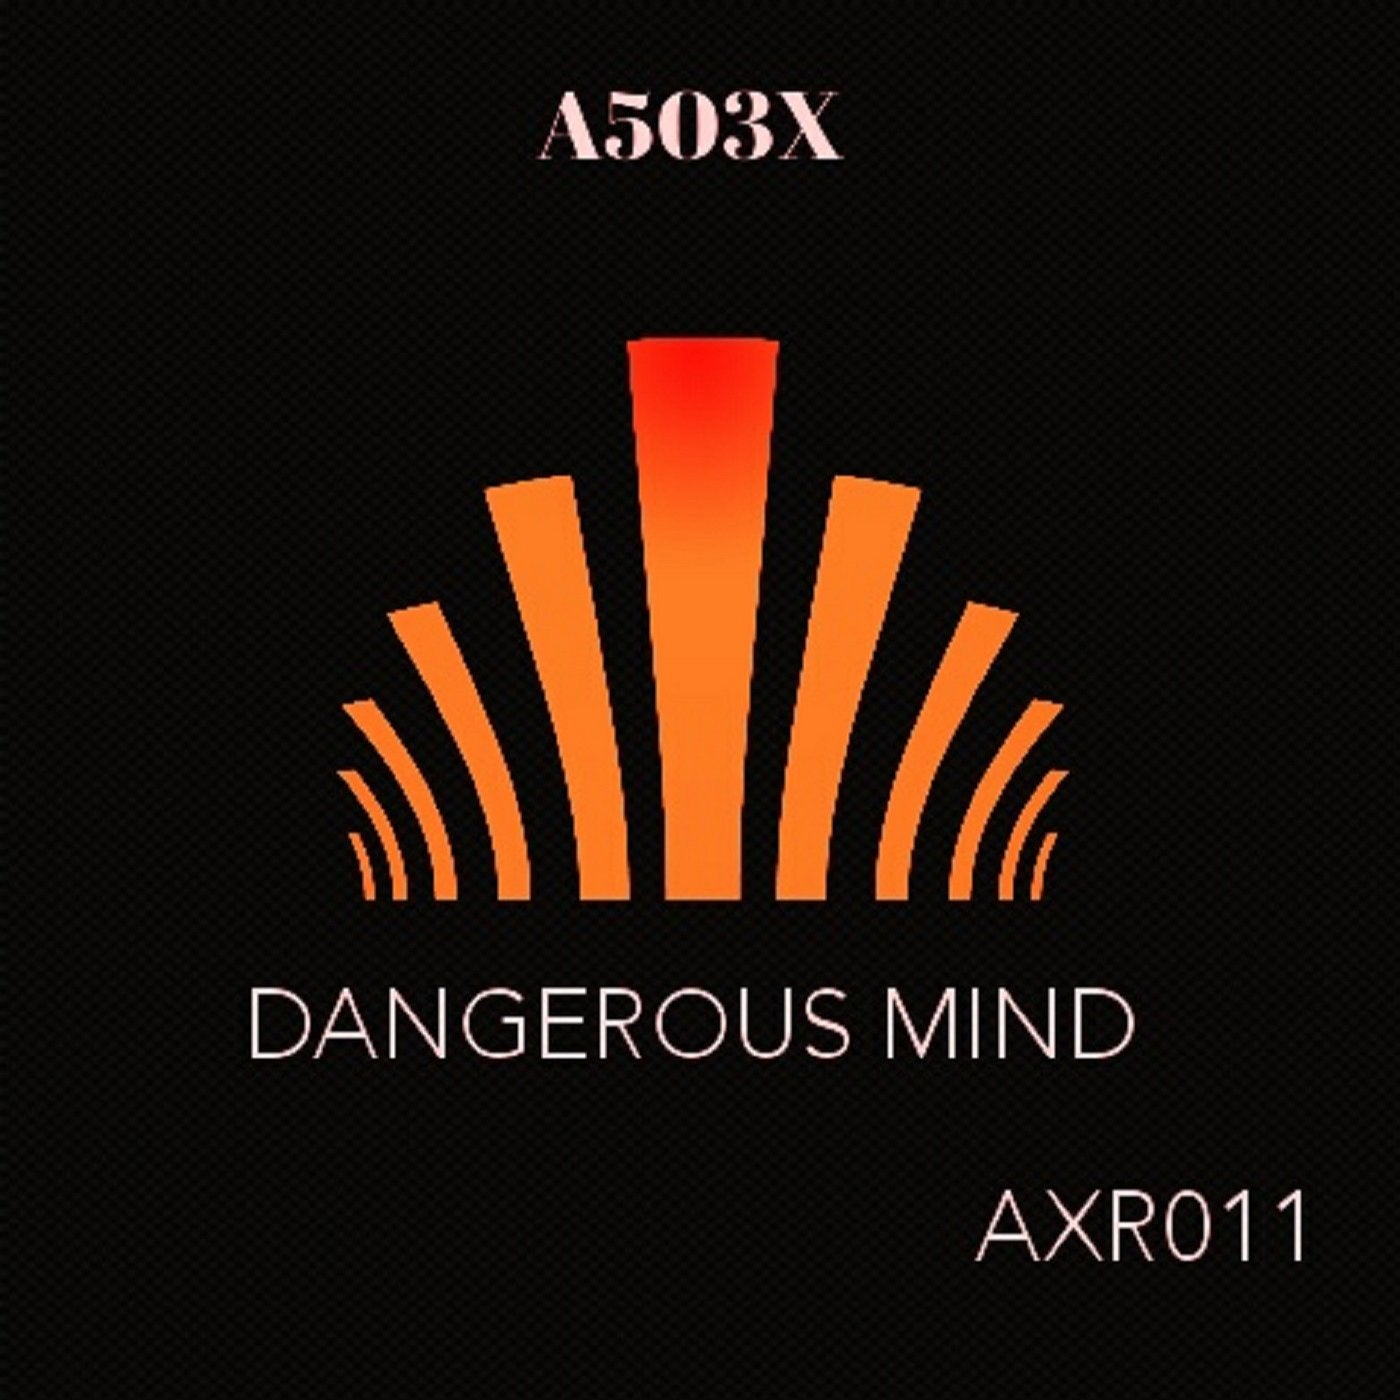 Dangerous mind